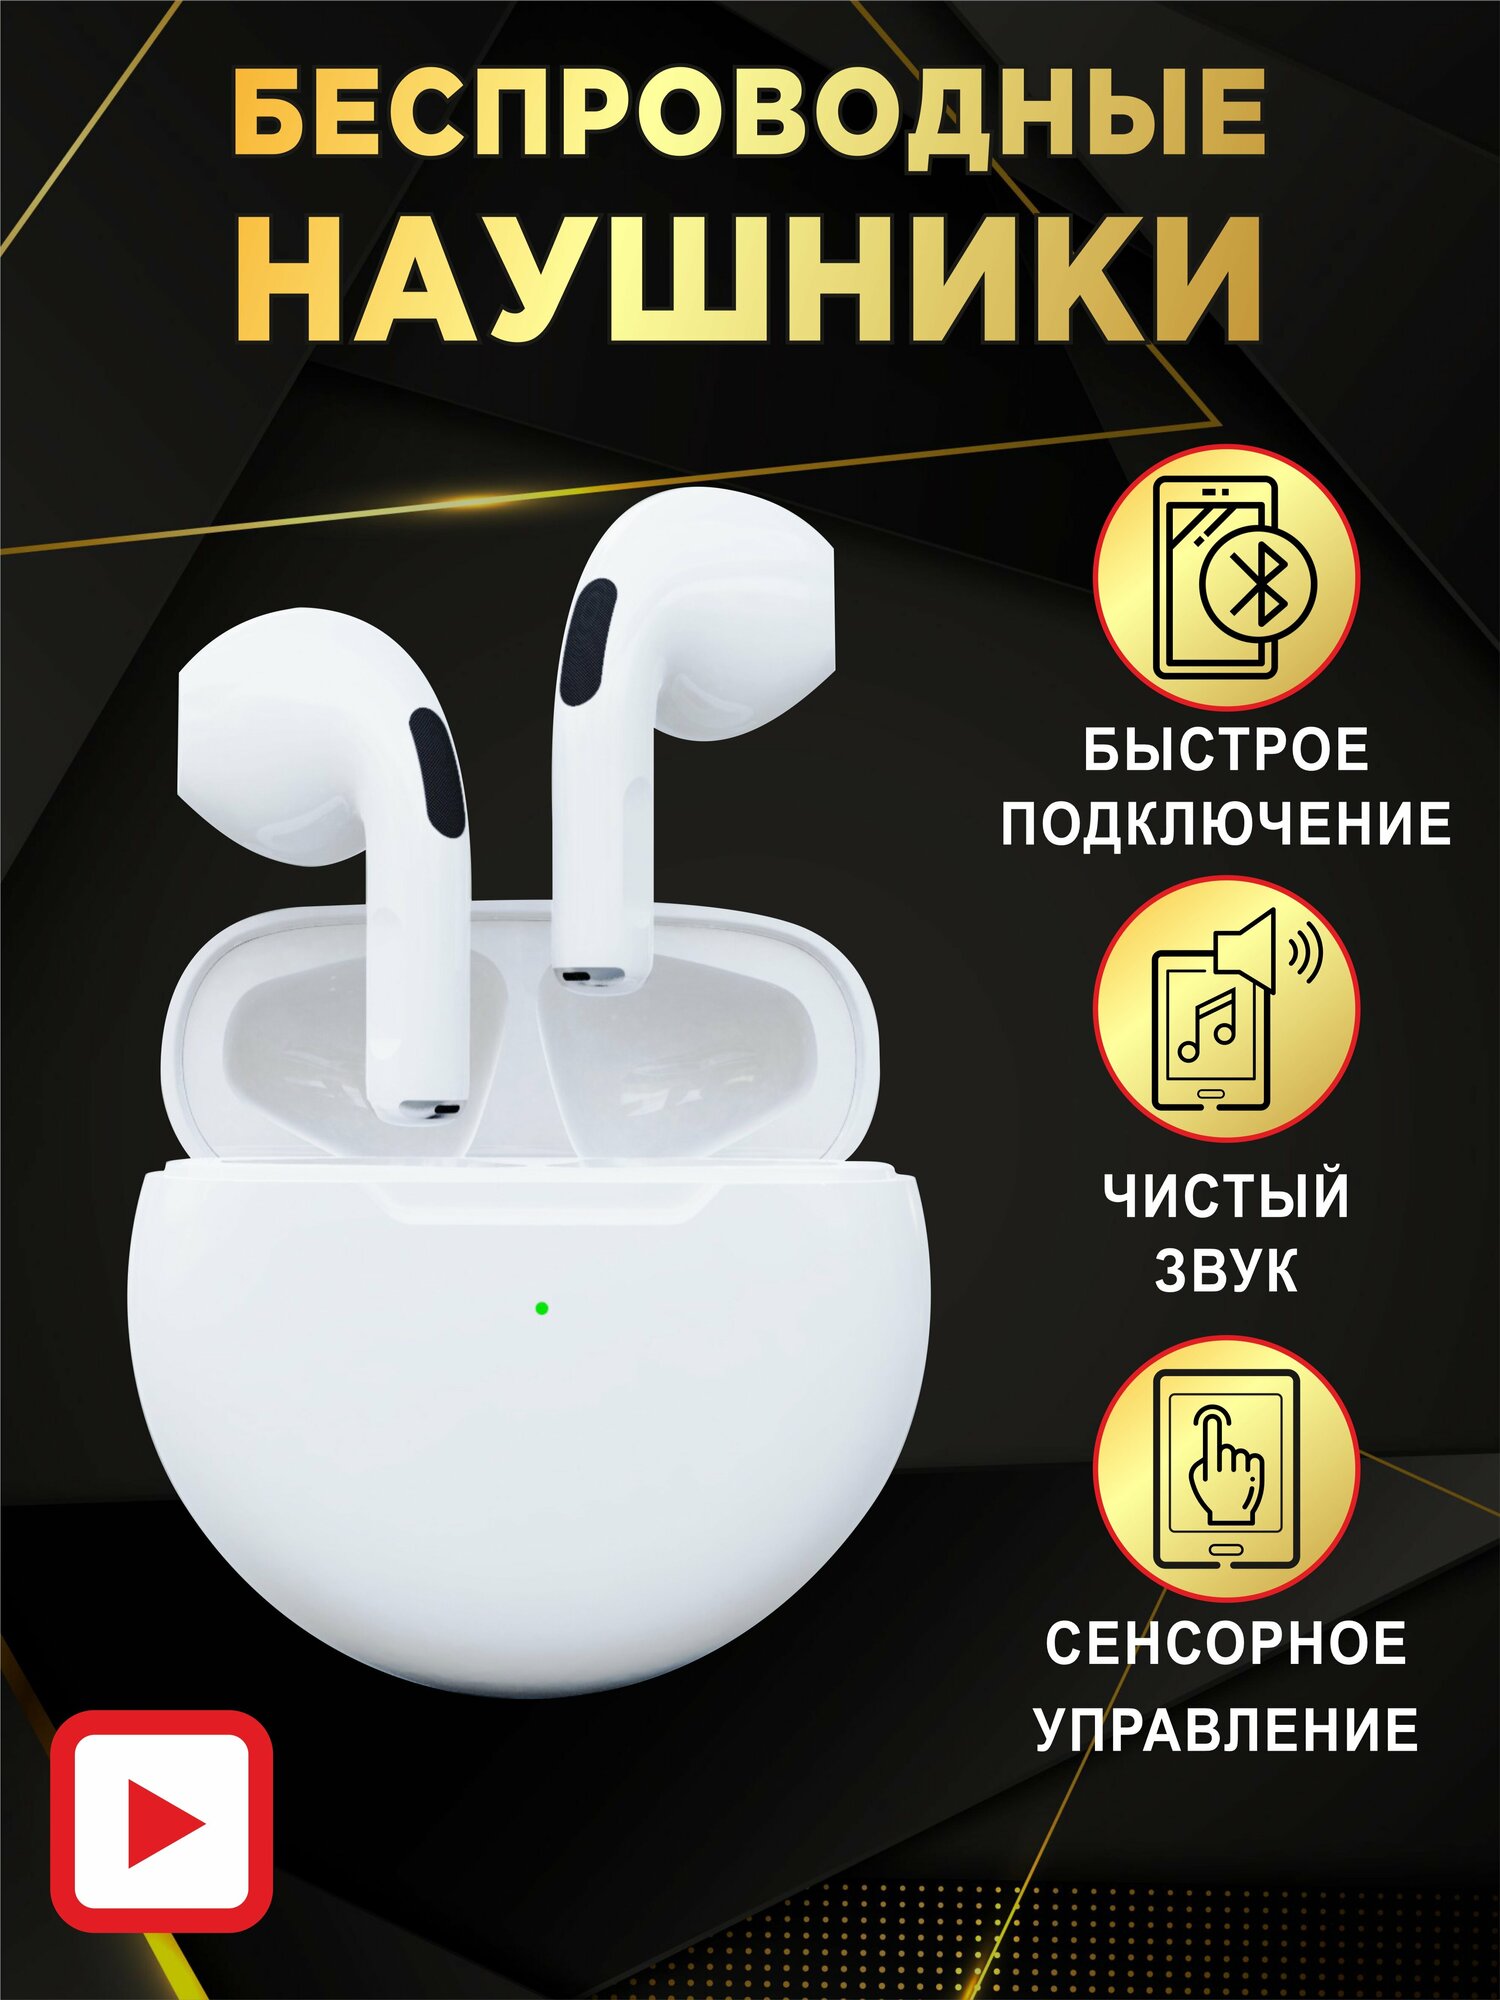 Беспроводные наушники Bluetooth для телефона iPhone, Android, спортивные и компьютерные, белые